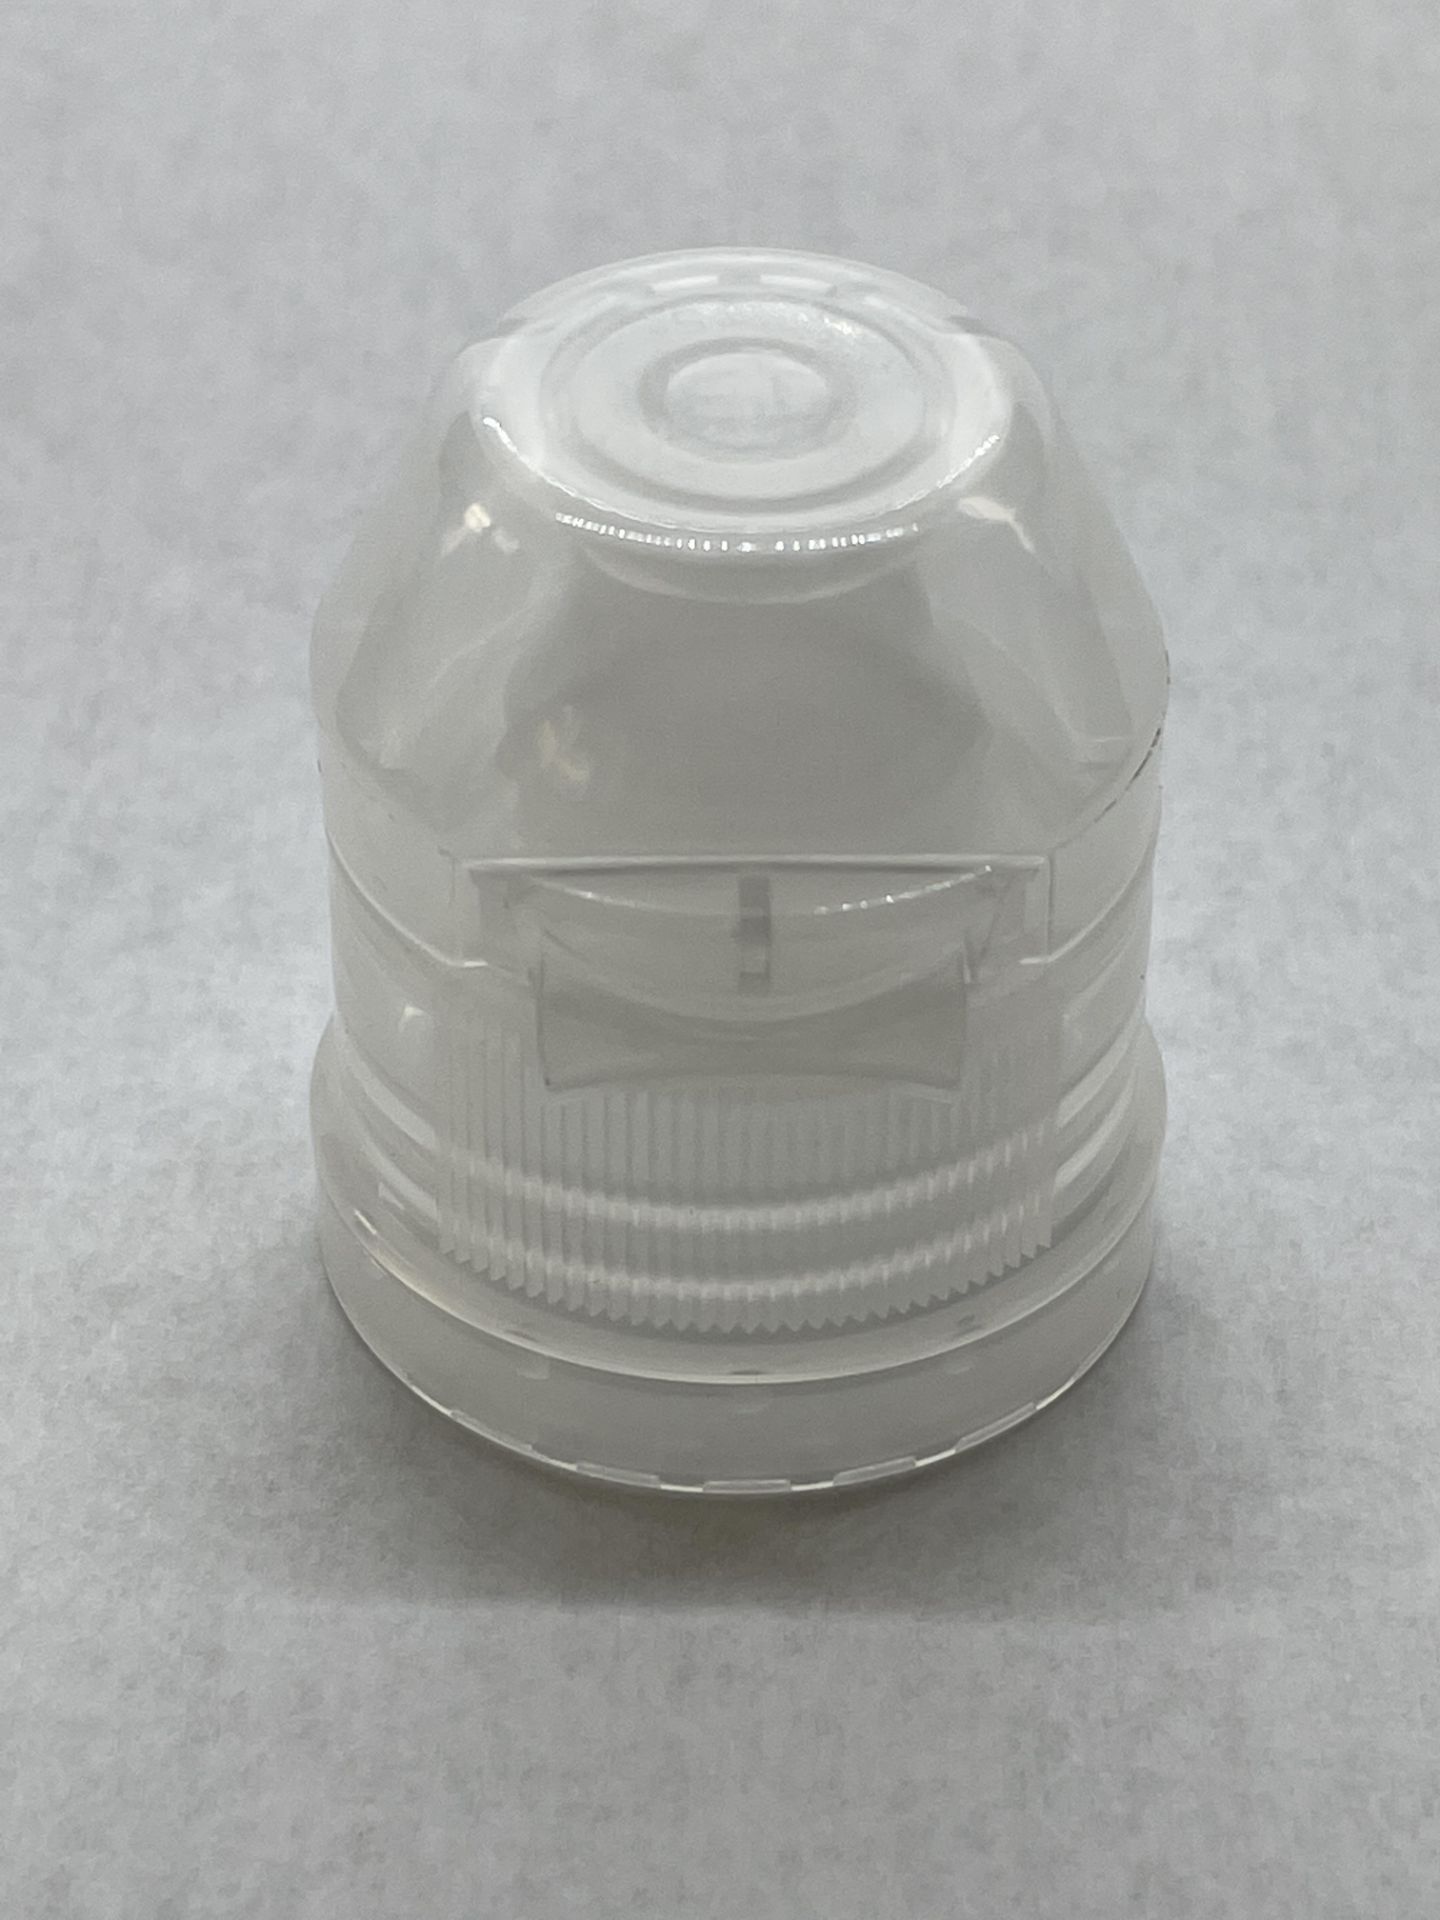 170,000 - Popular Aptar Water bottle sport cap for 16 oz bottle, 28-410 Threading - Image 3 of 3